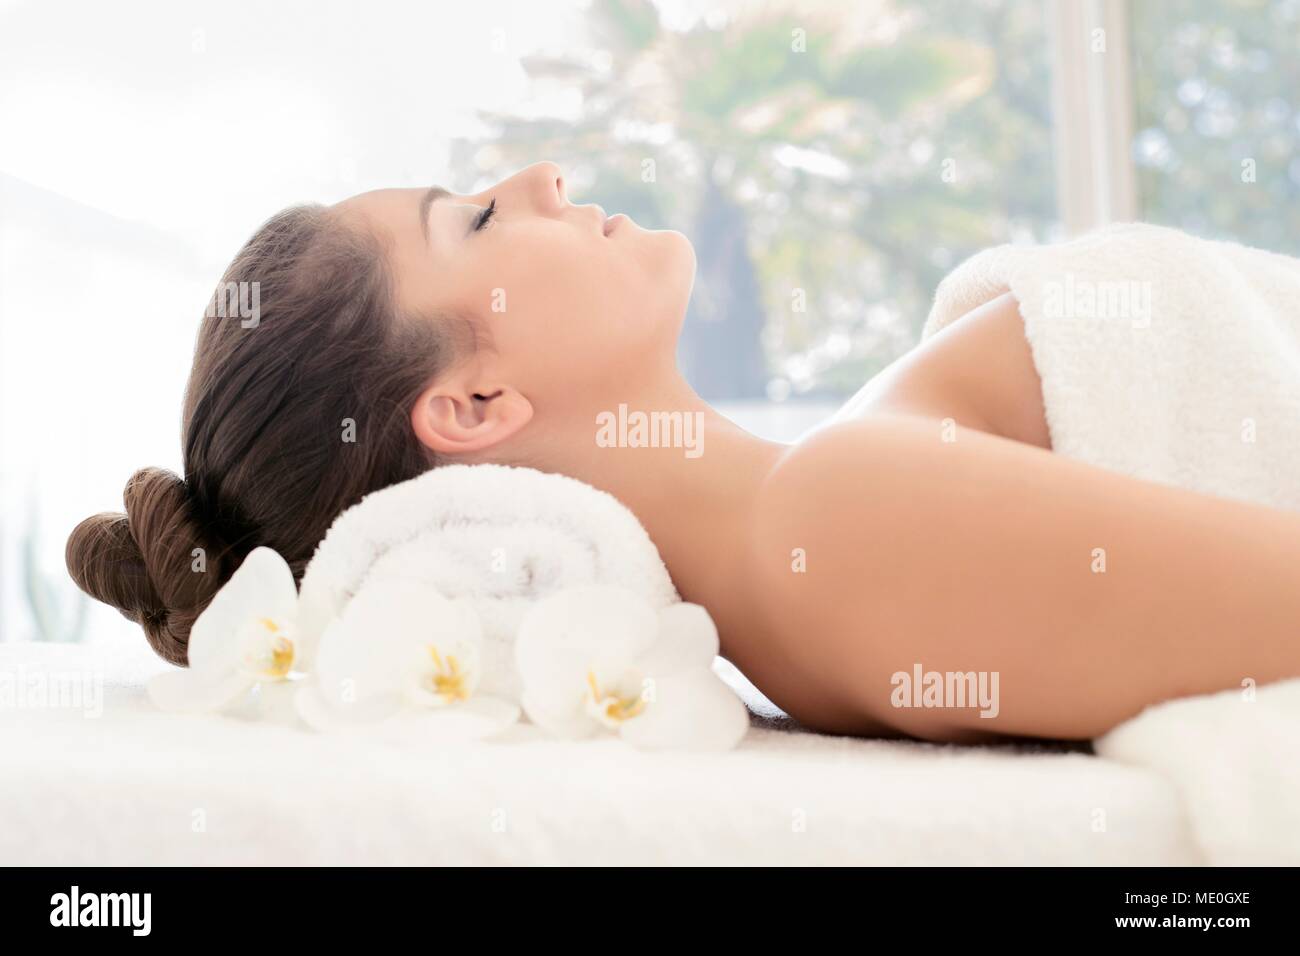 Junge Frau liegen auf dem Handtuch in Spa, die Augen geschlossen. Stockfoto